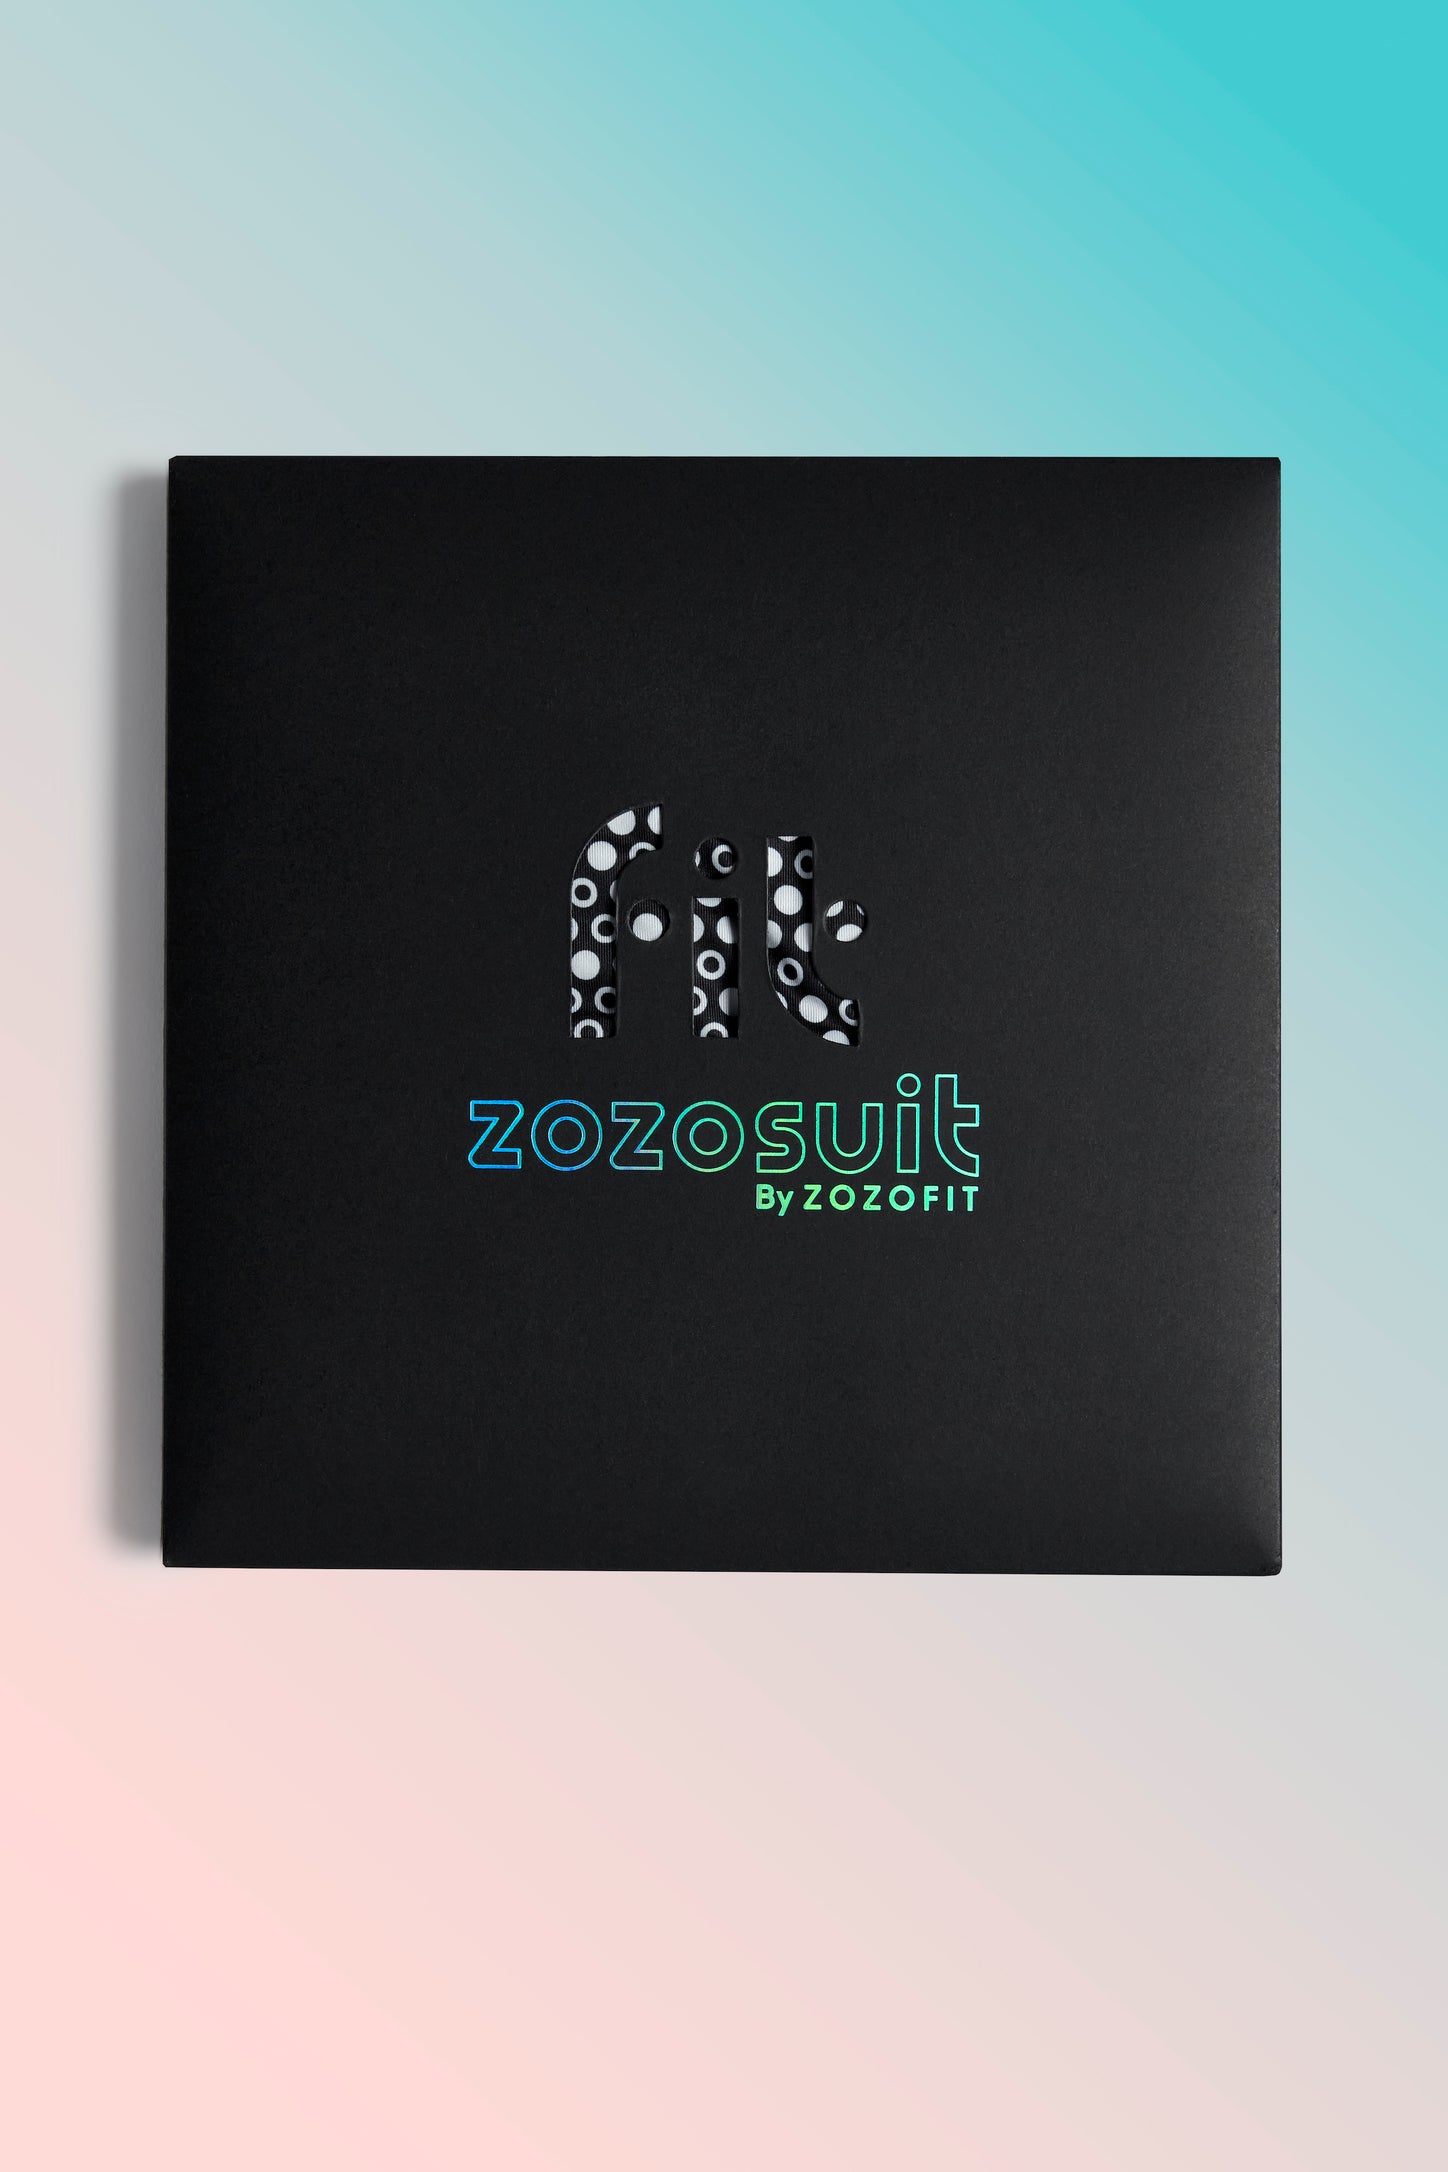 ZOZOSUIT & App